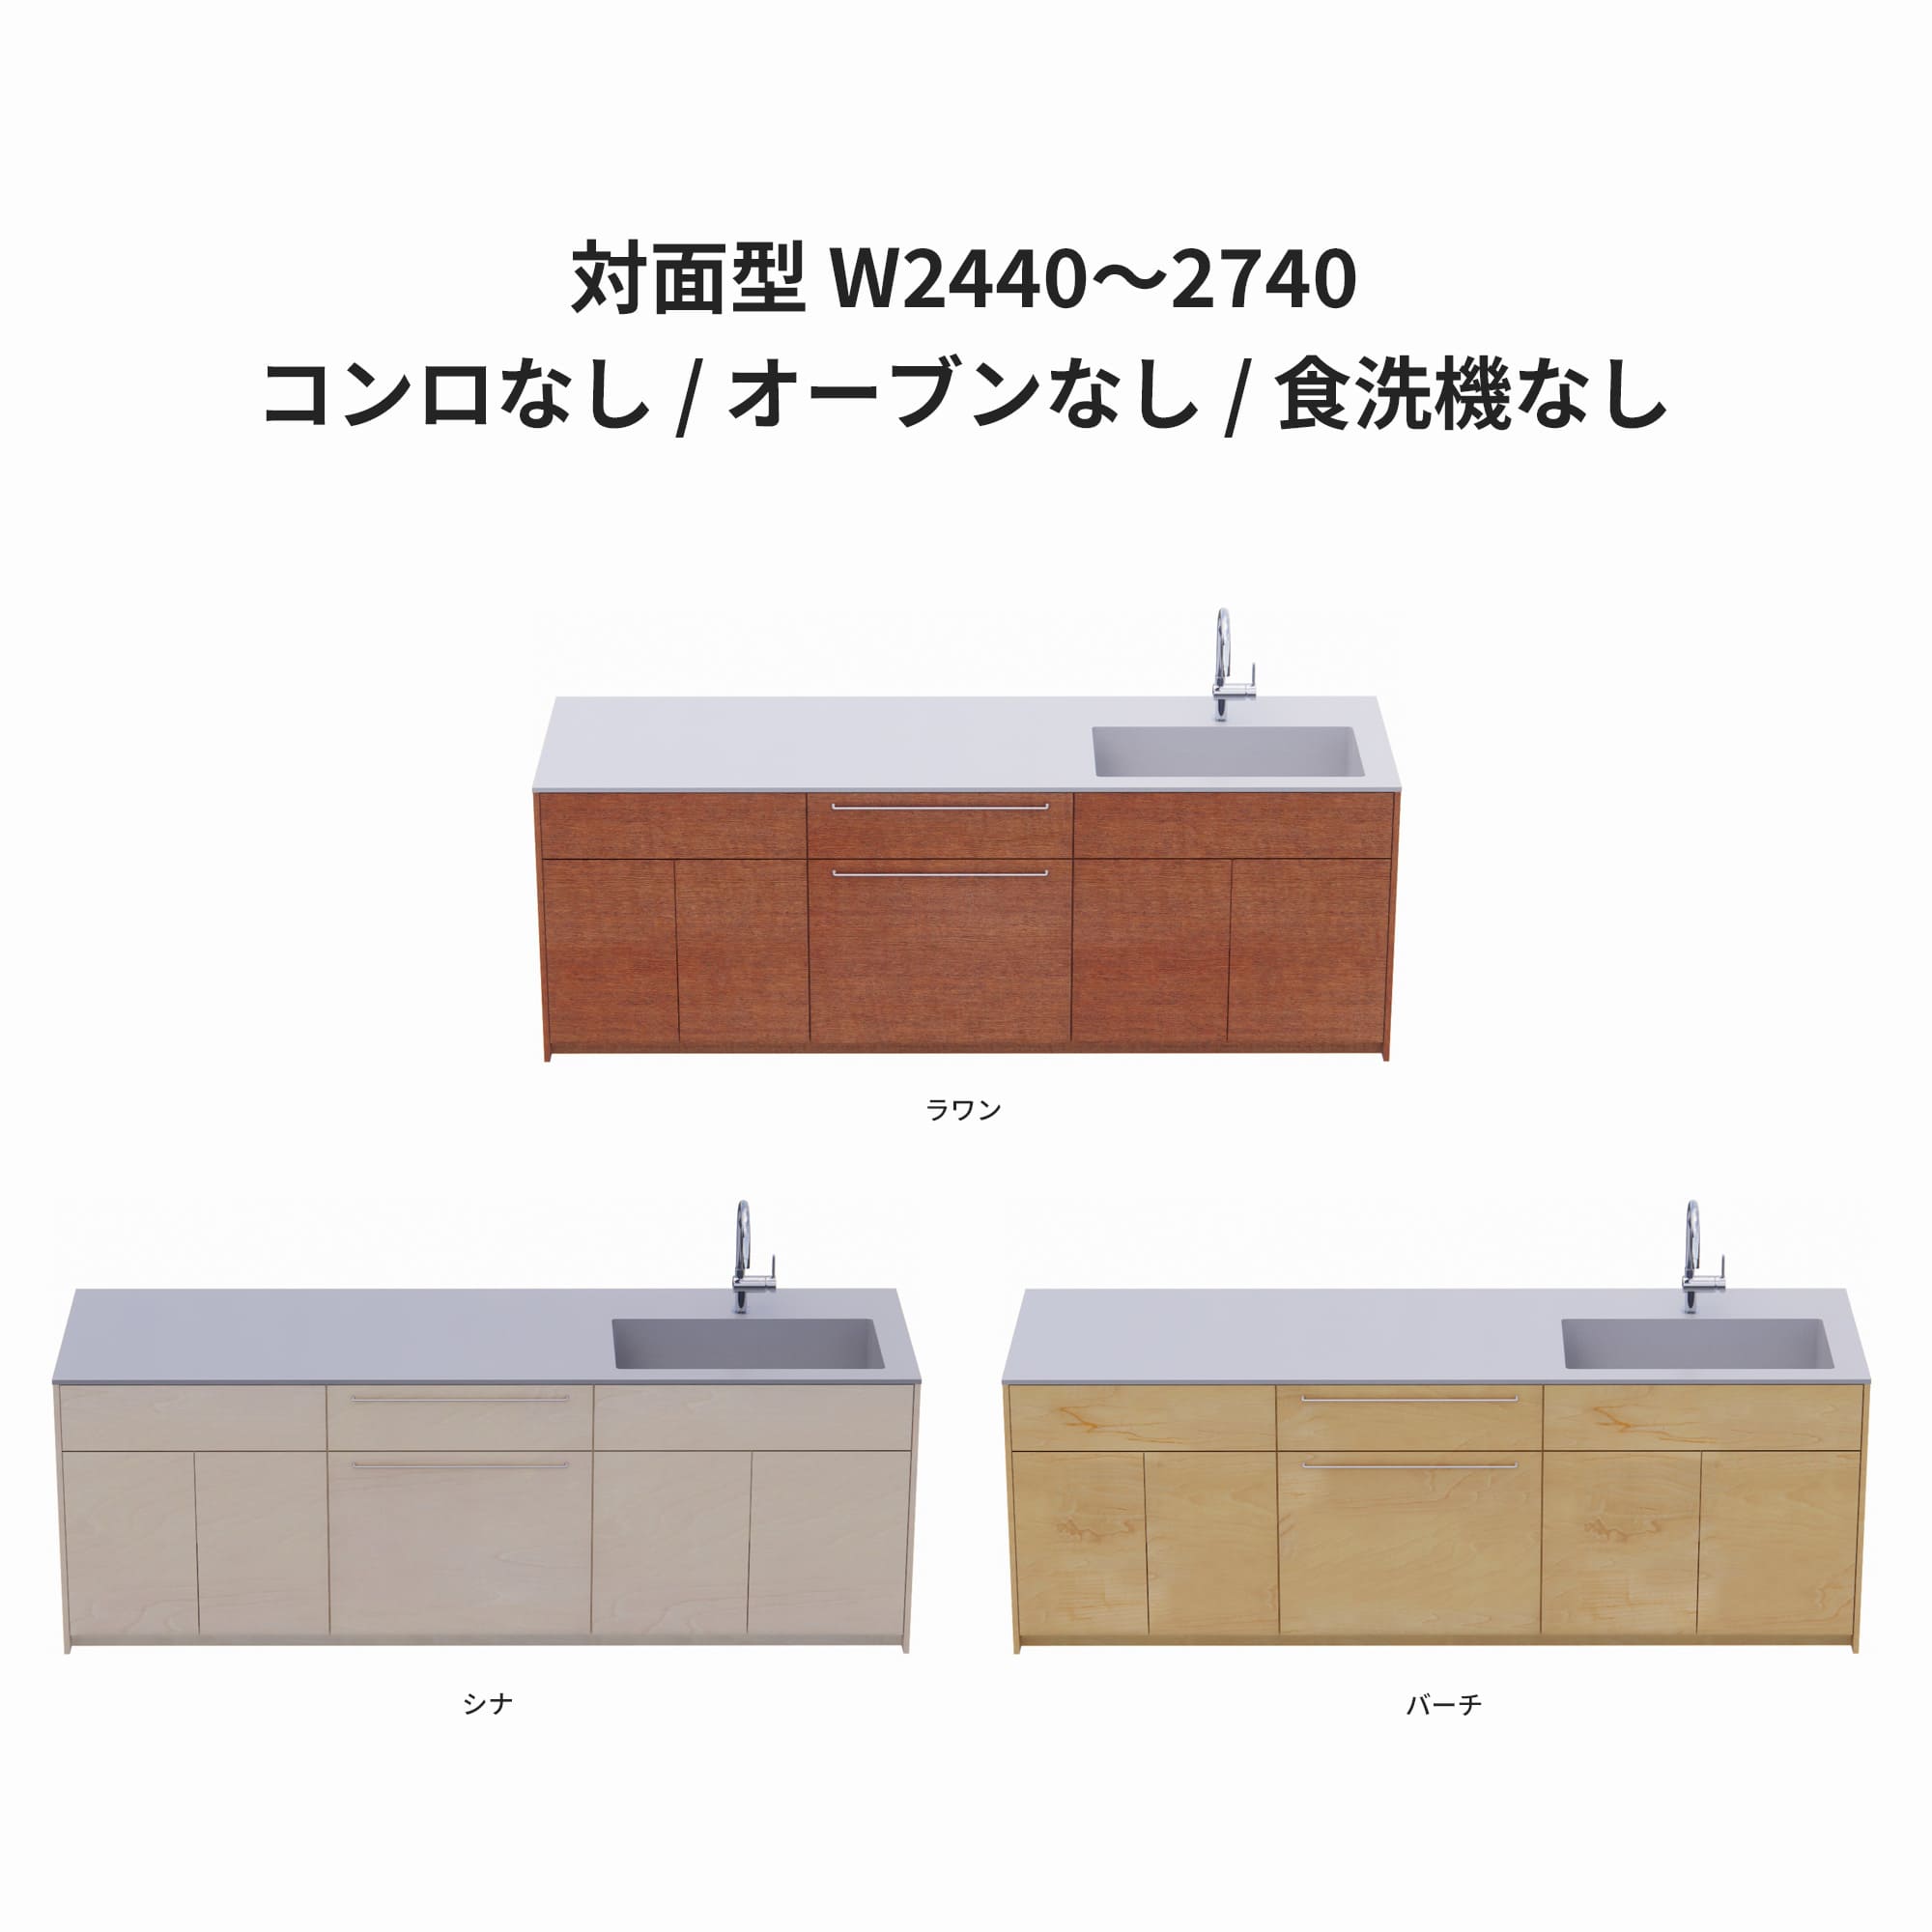 木製システムキッチン 対面型 W2440～2740・コンロなし / オーブンなし / 食洗機なし KB-KC022-42-G183 ラワン・シナ・バーチが選択できます